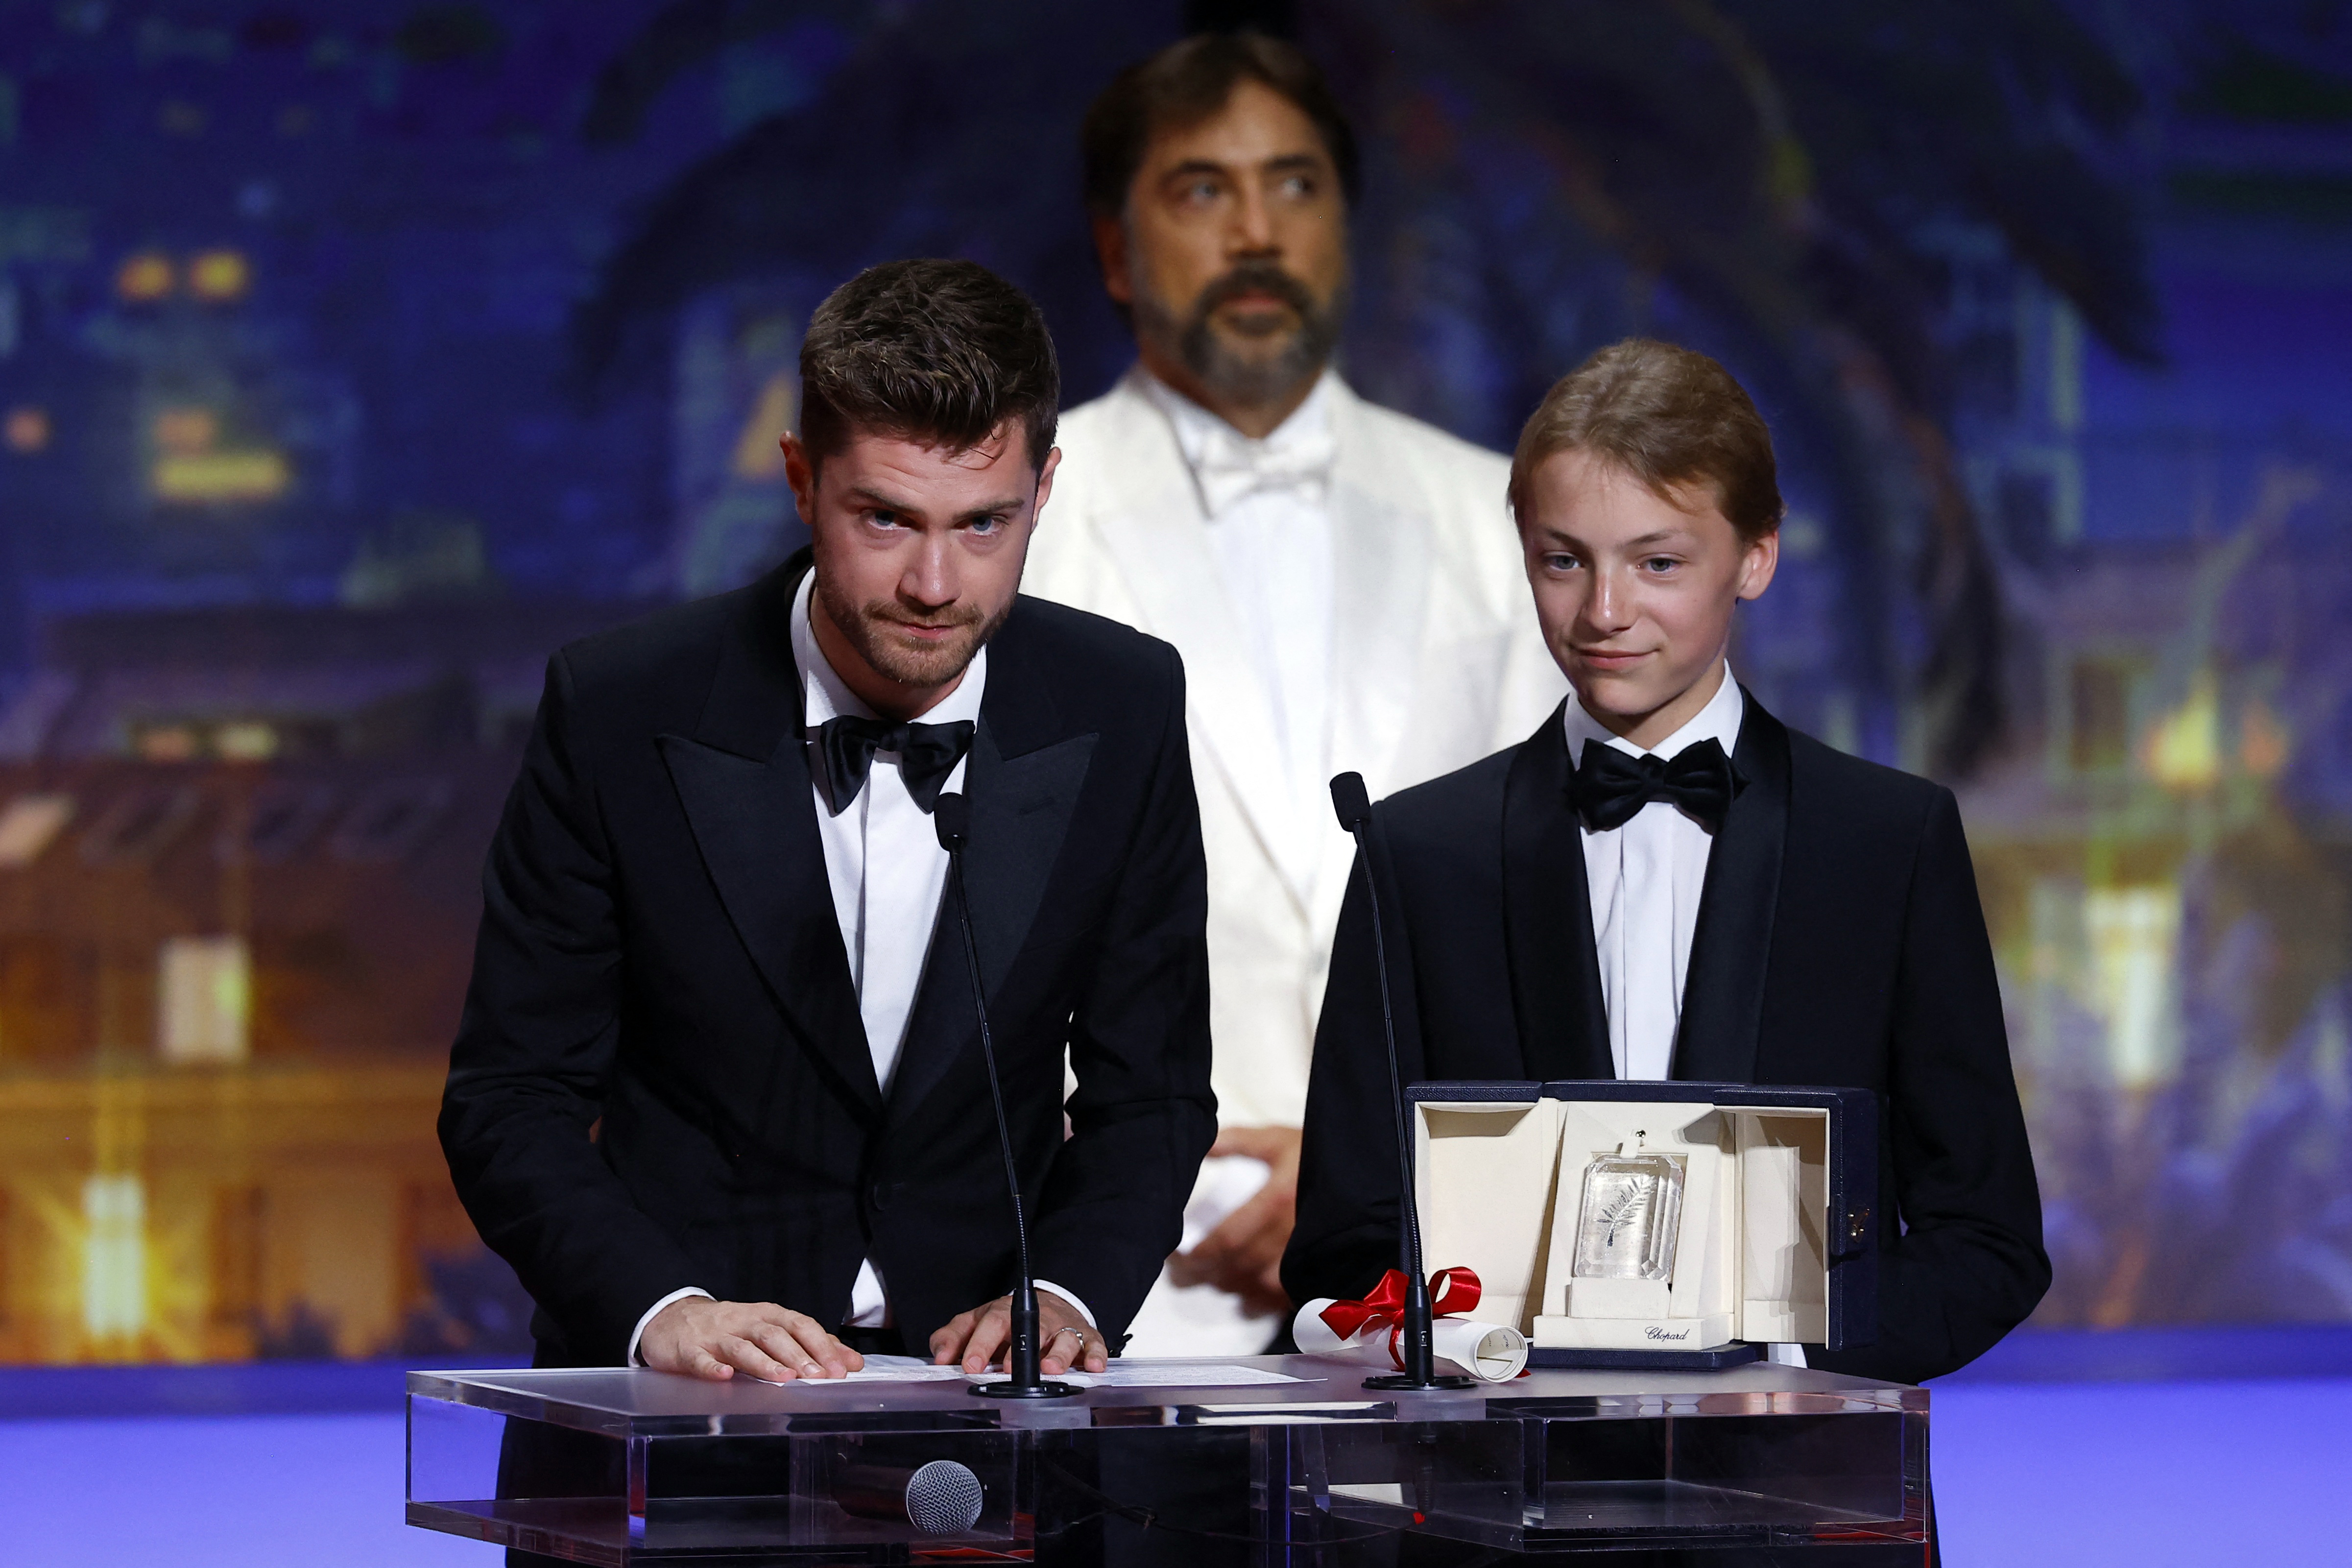 El cineasta belga Lukas Dhont agradece el Gran Premio del Jurado por la película "Close". A su lado, el actor Eden Dambrine. REUTERS/Eric Gaillard